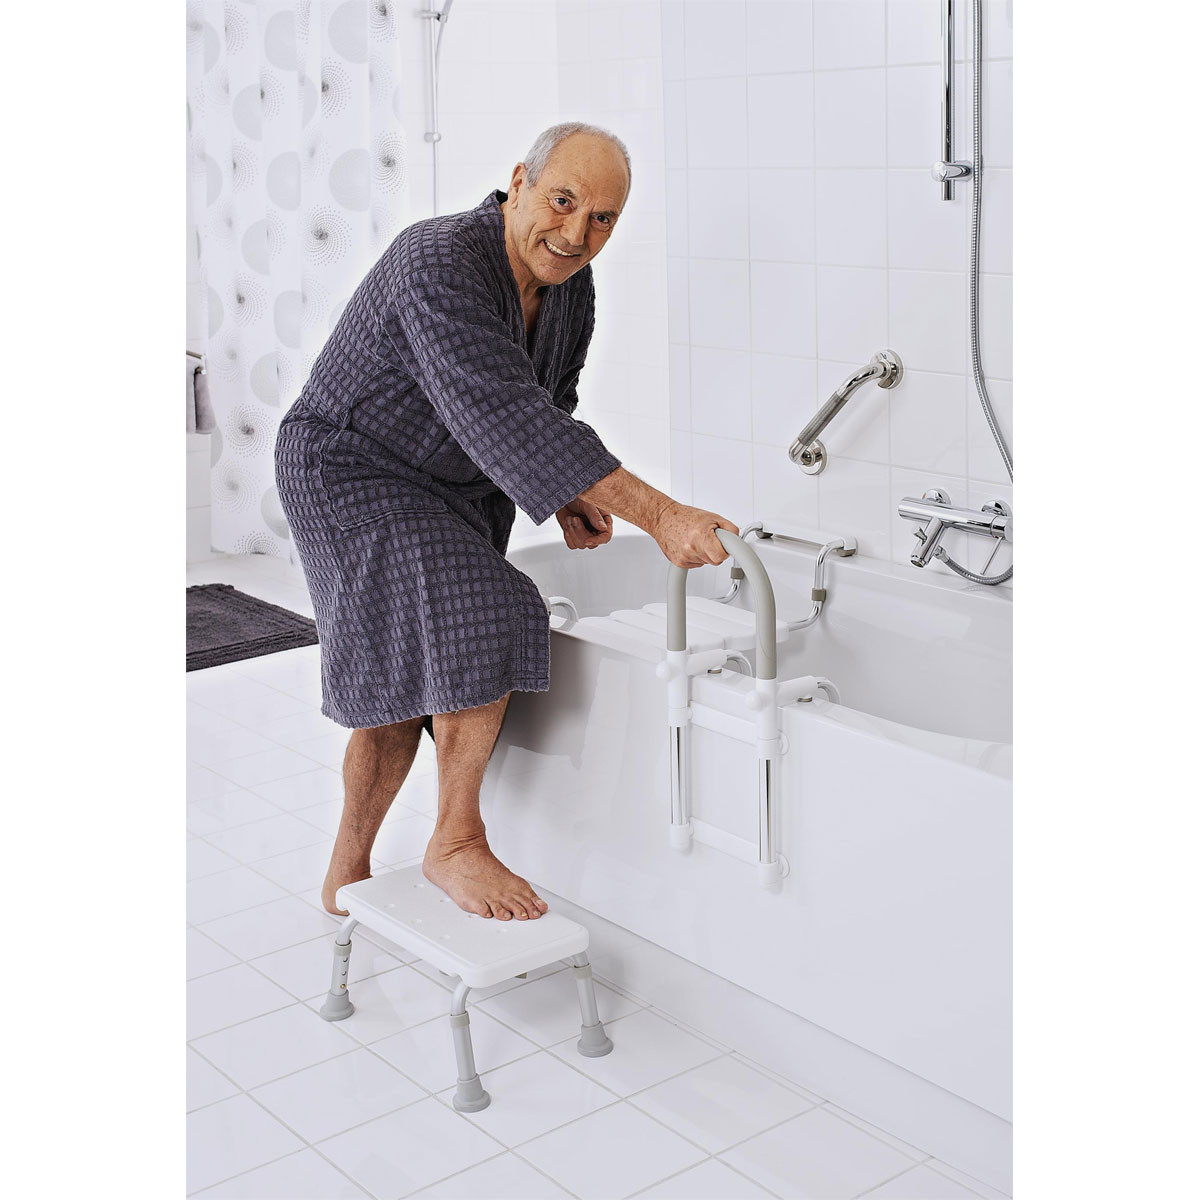 KMINA - Gepolsterter Badewannen Einstiegshilfe für Senioren